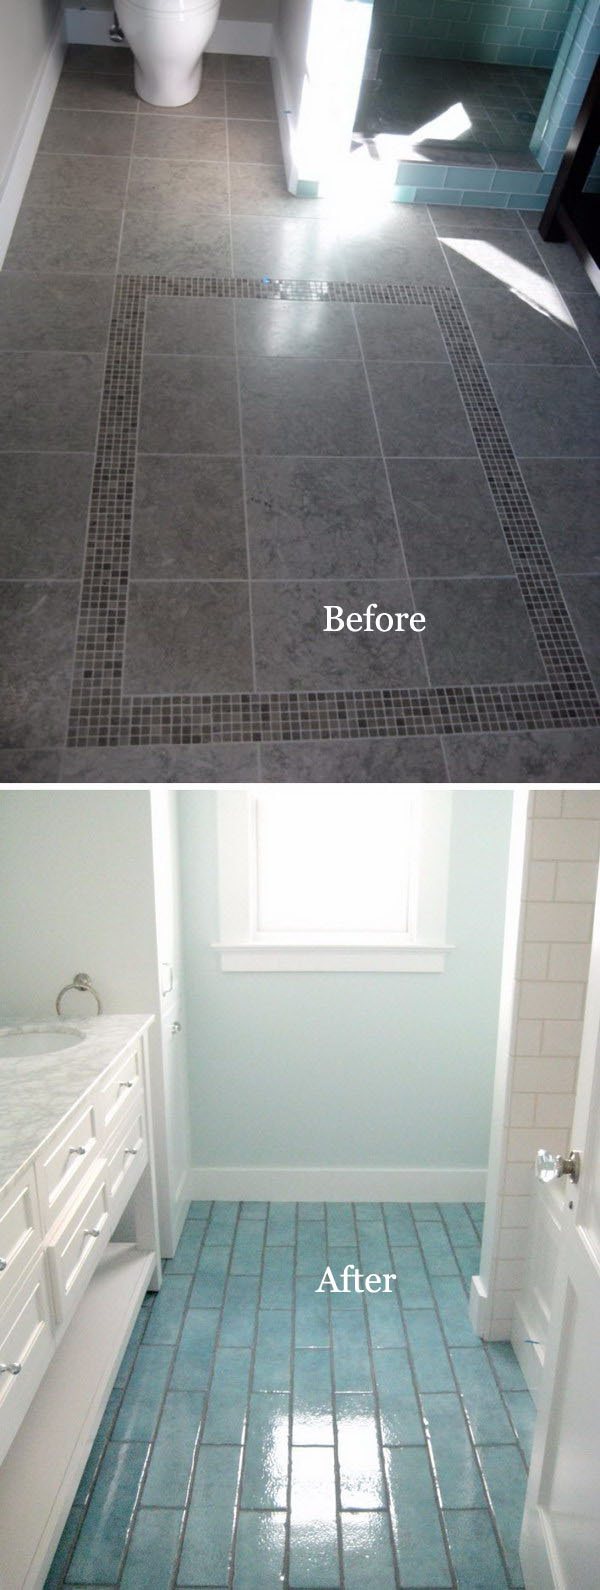 Remodel DIY bathroom flooring with Aqua Blue tiles. 